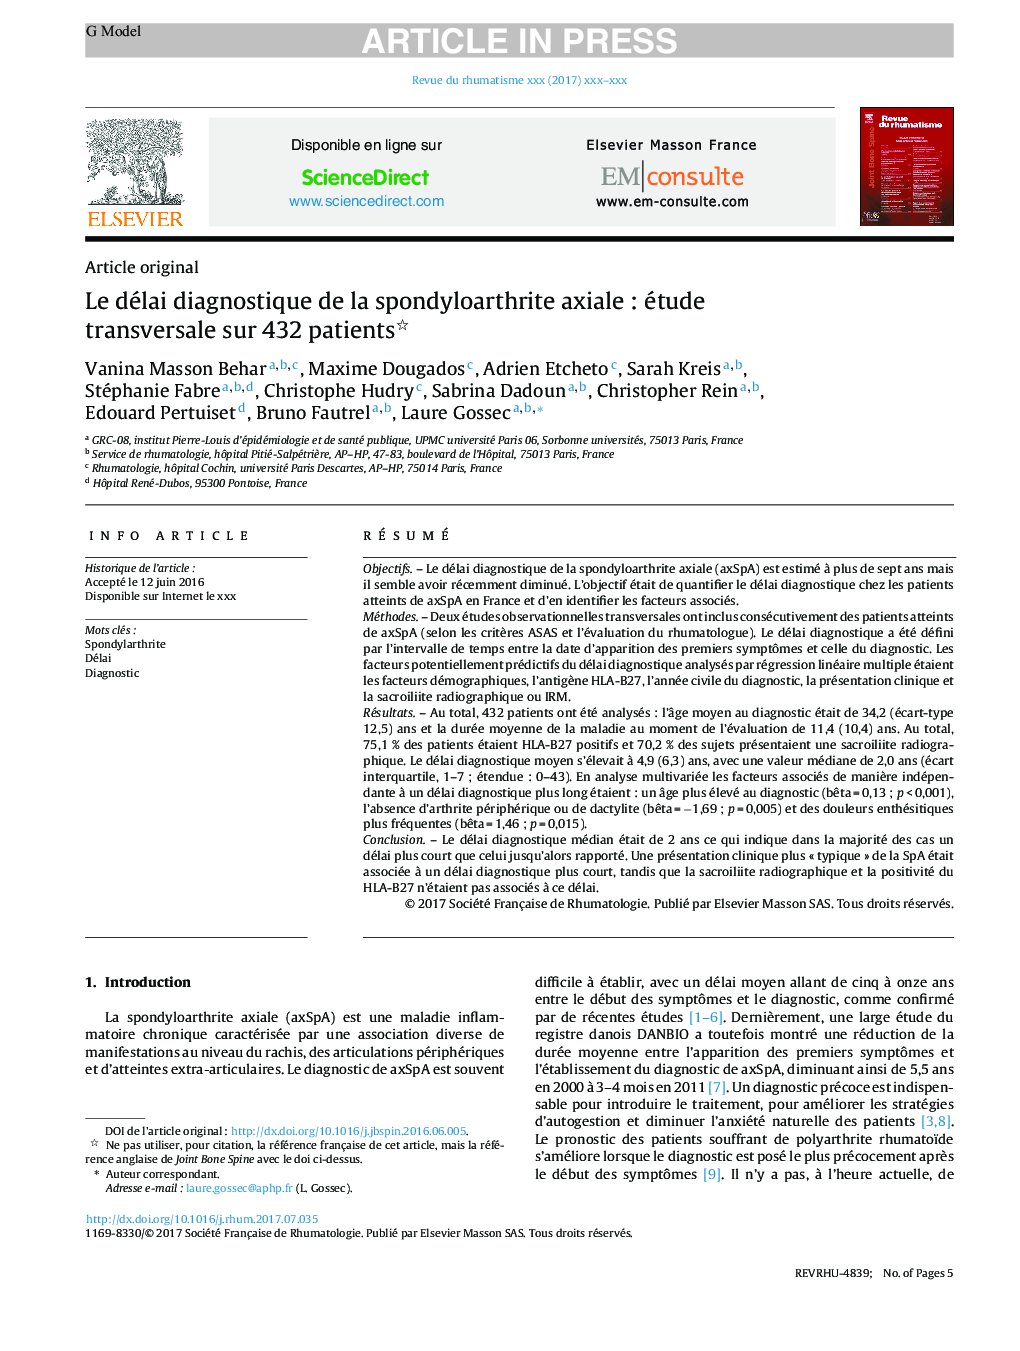 Le délai diagnostique de la spondyloarthrite axialeÂ : étude transversale sur 432Â patients